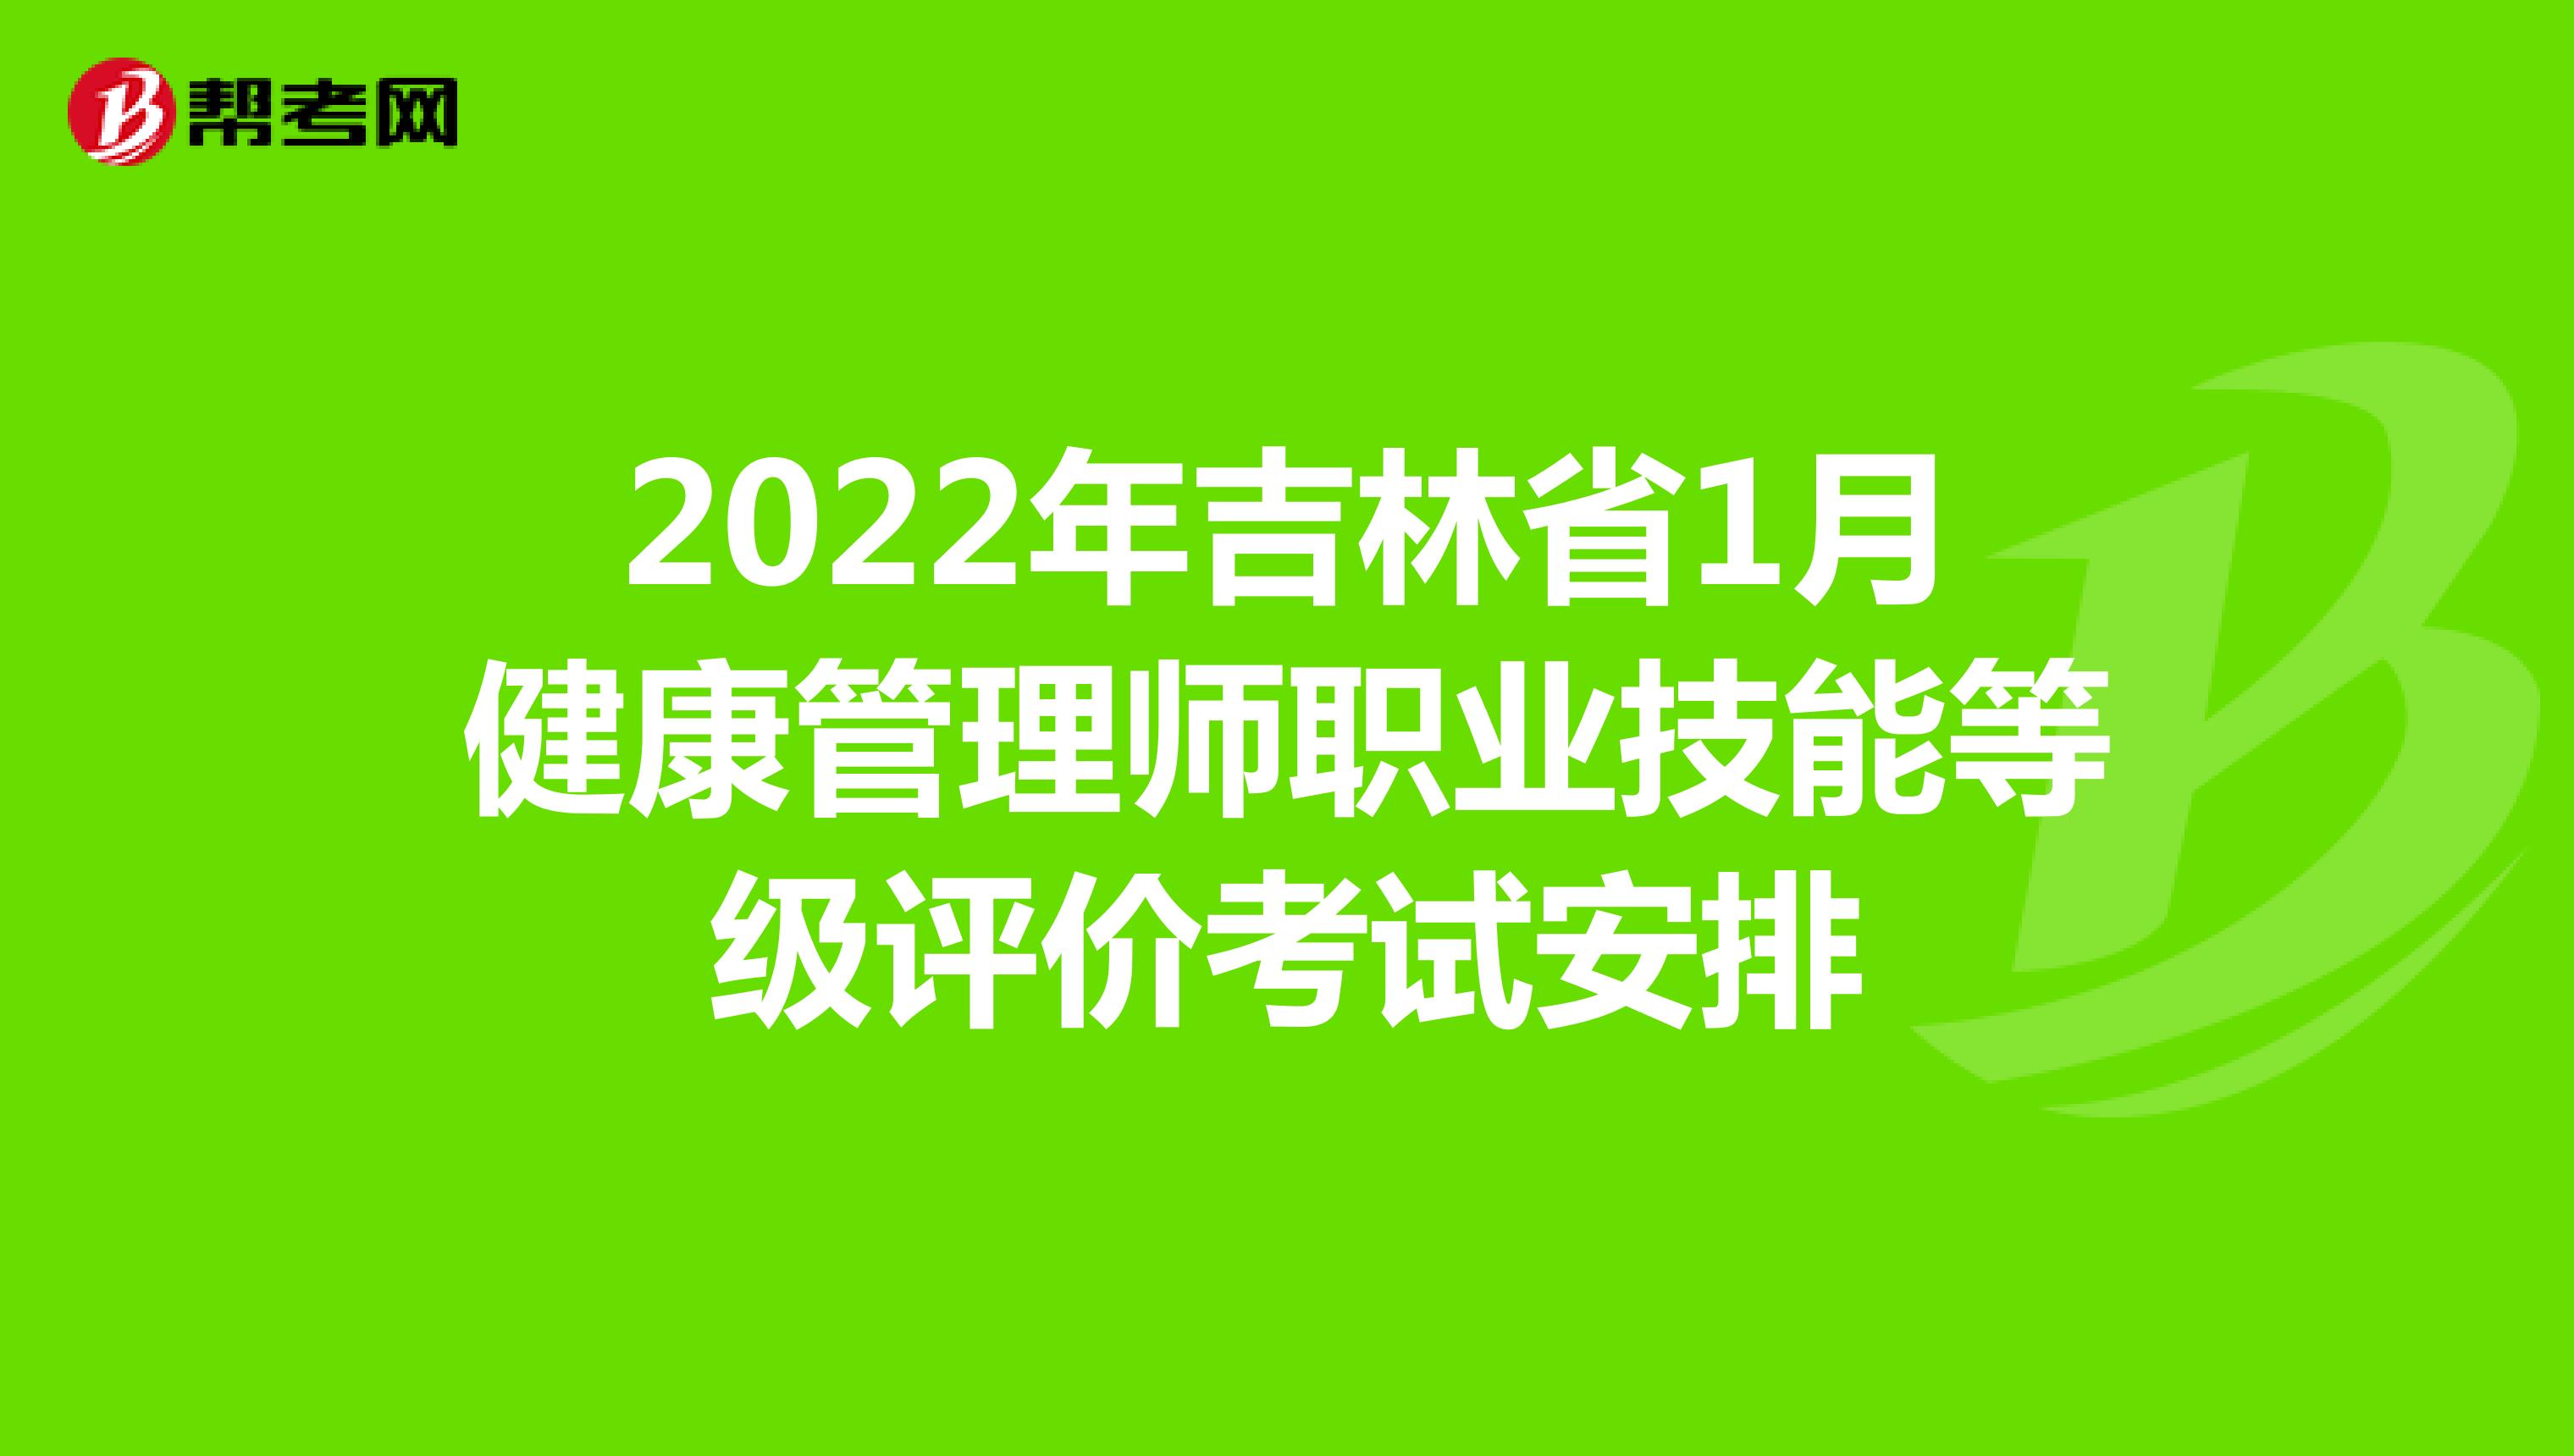 2022年吉林省1月健康管理师职业技能等级评价考试安排